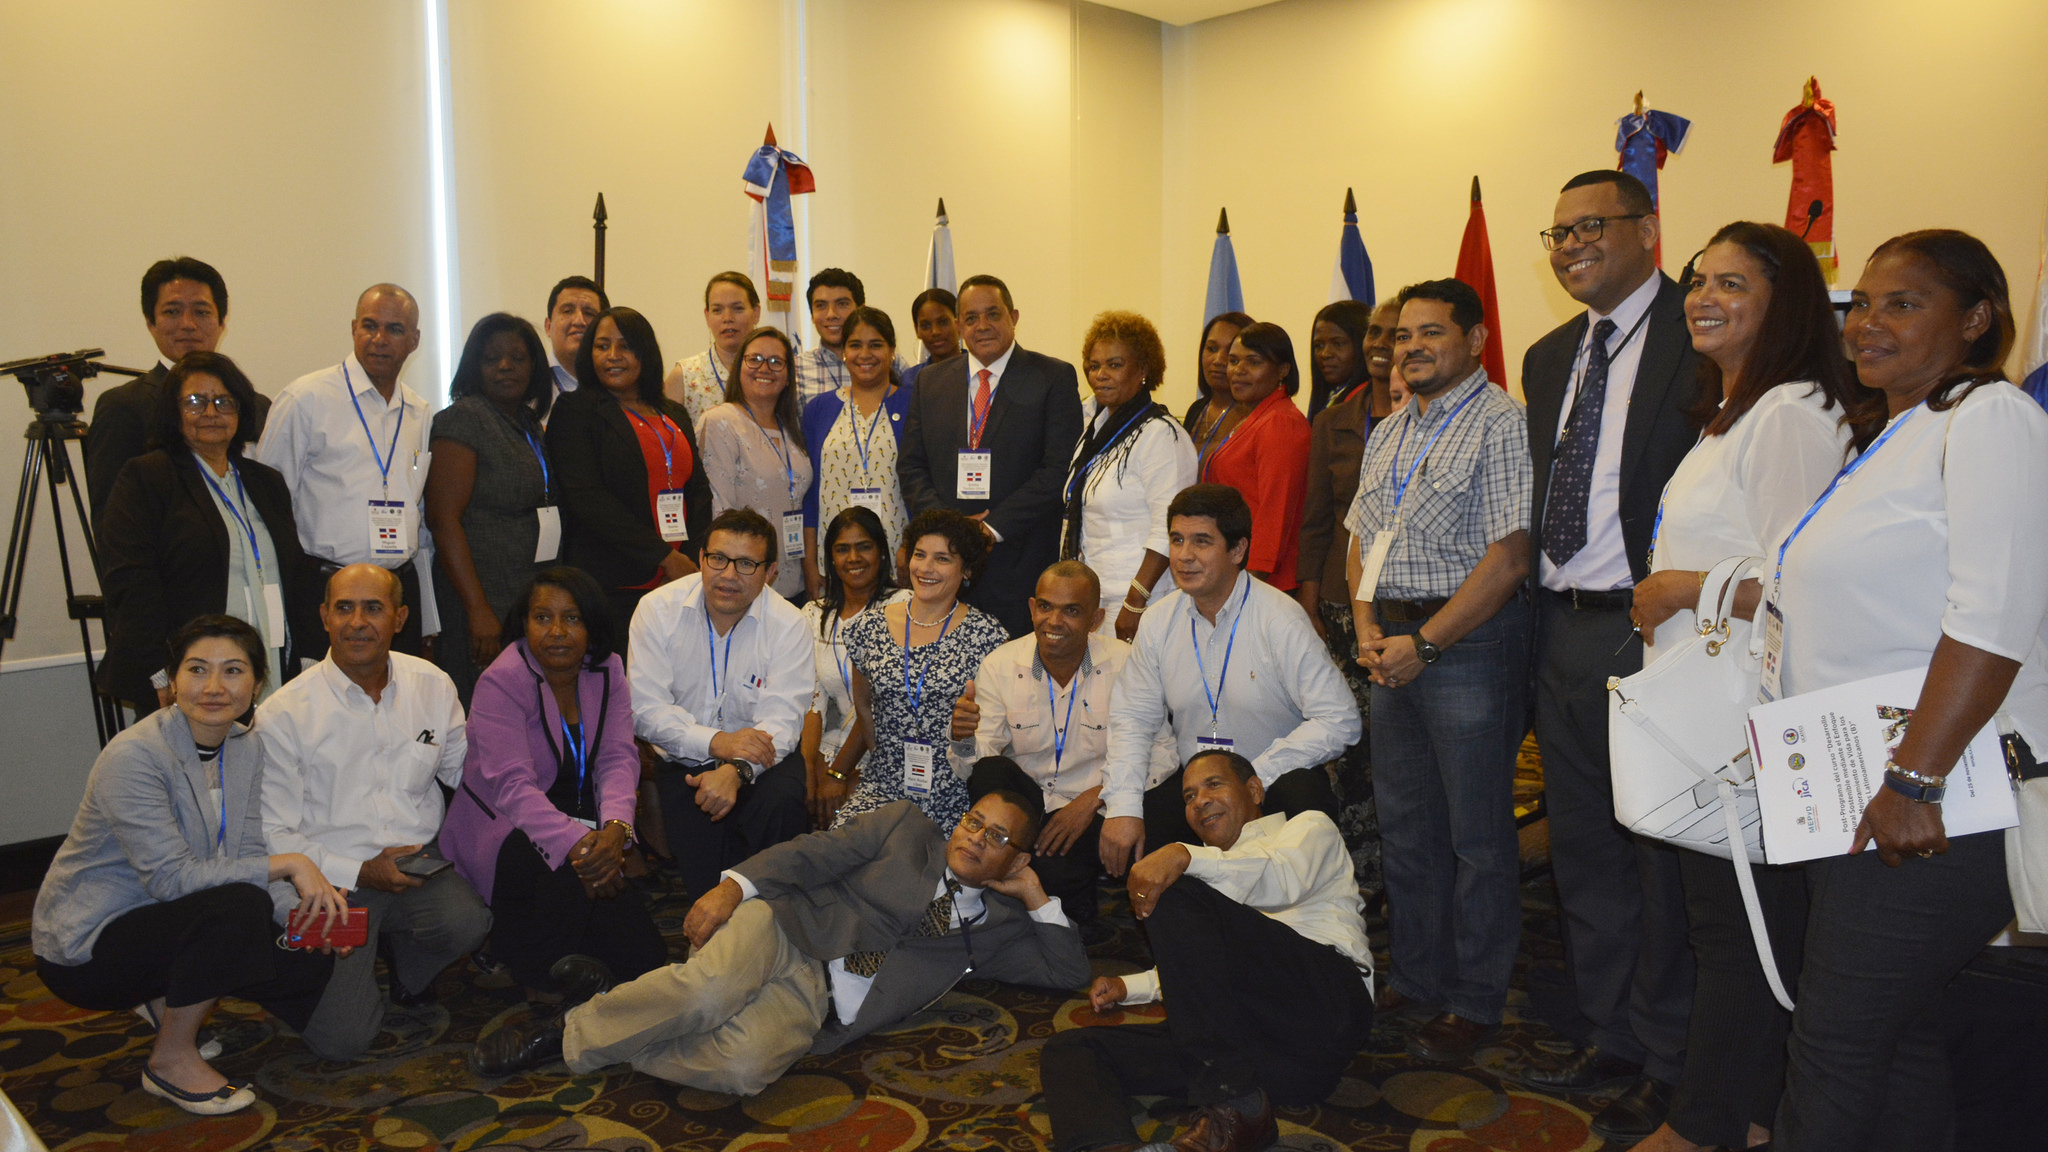 REPÚBLICA DOMINICANA: IAD resalta importancia Enfoque Mejoramiento de Vida para el Desarrollo Rural. Becarios de América Latina conocerán experiencia dominicana